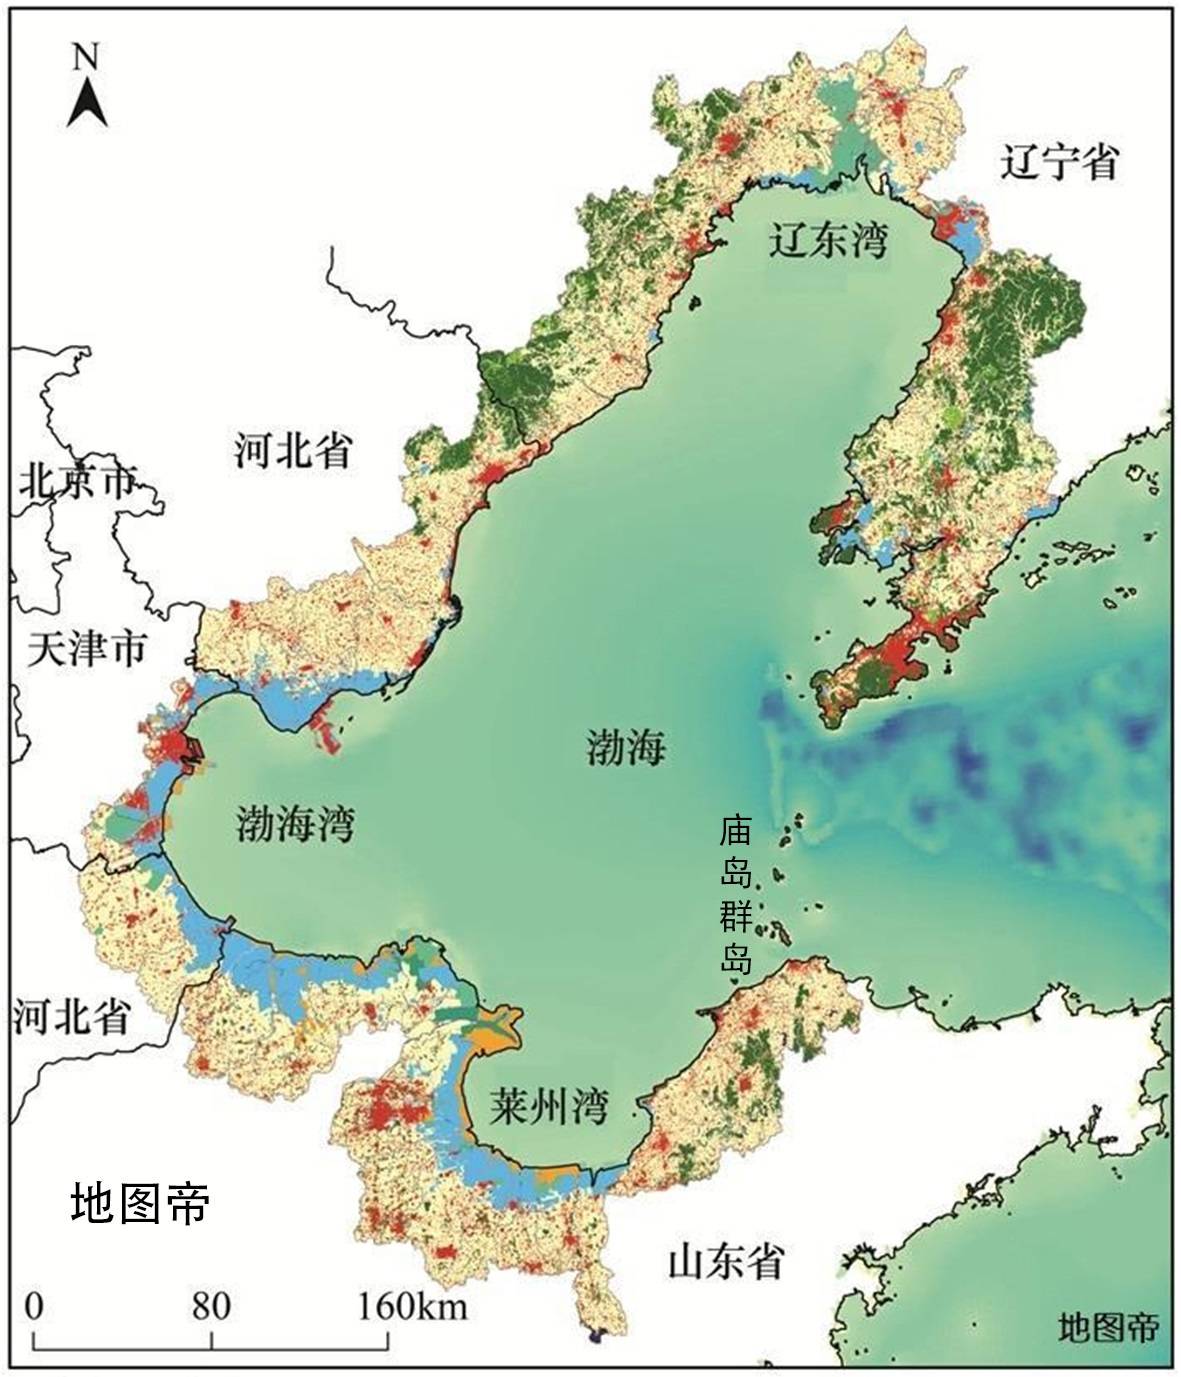 原创渤海海峡并不宽,为何不修建跨海大桥来连接山东和东北呢?